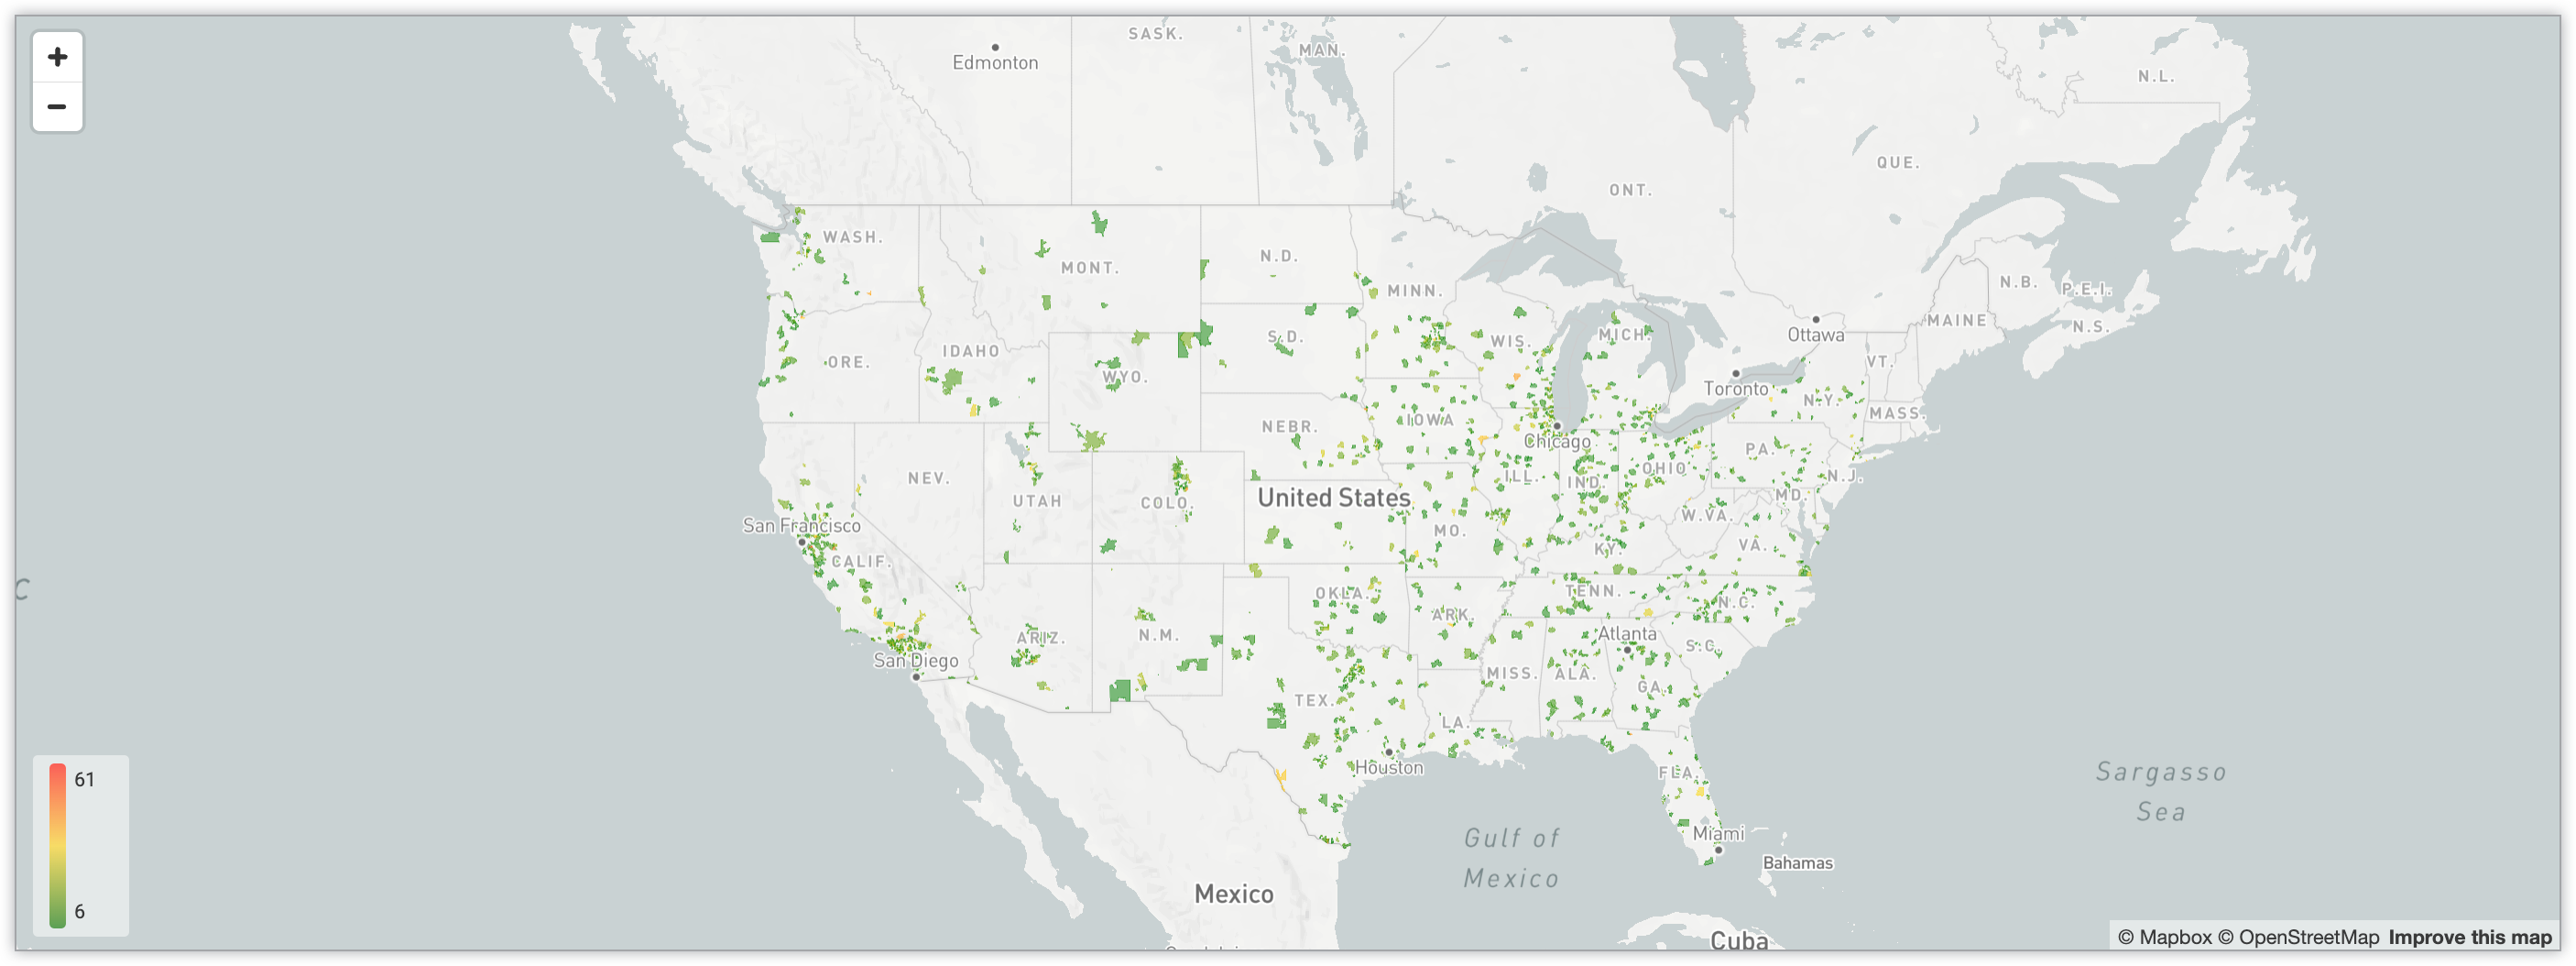 Carte interactive indiquant le nombre d'utilisateurs par code postal aux États-Unis, à l'aide d'un système de dégradé de couleurs